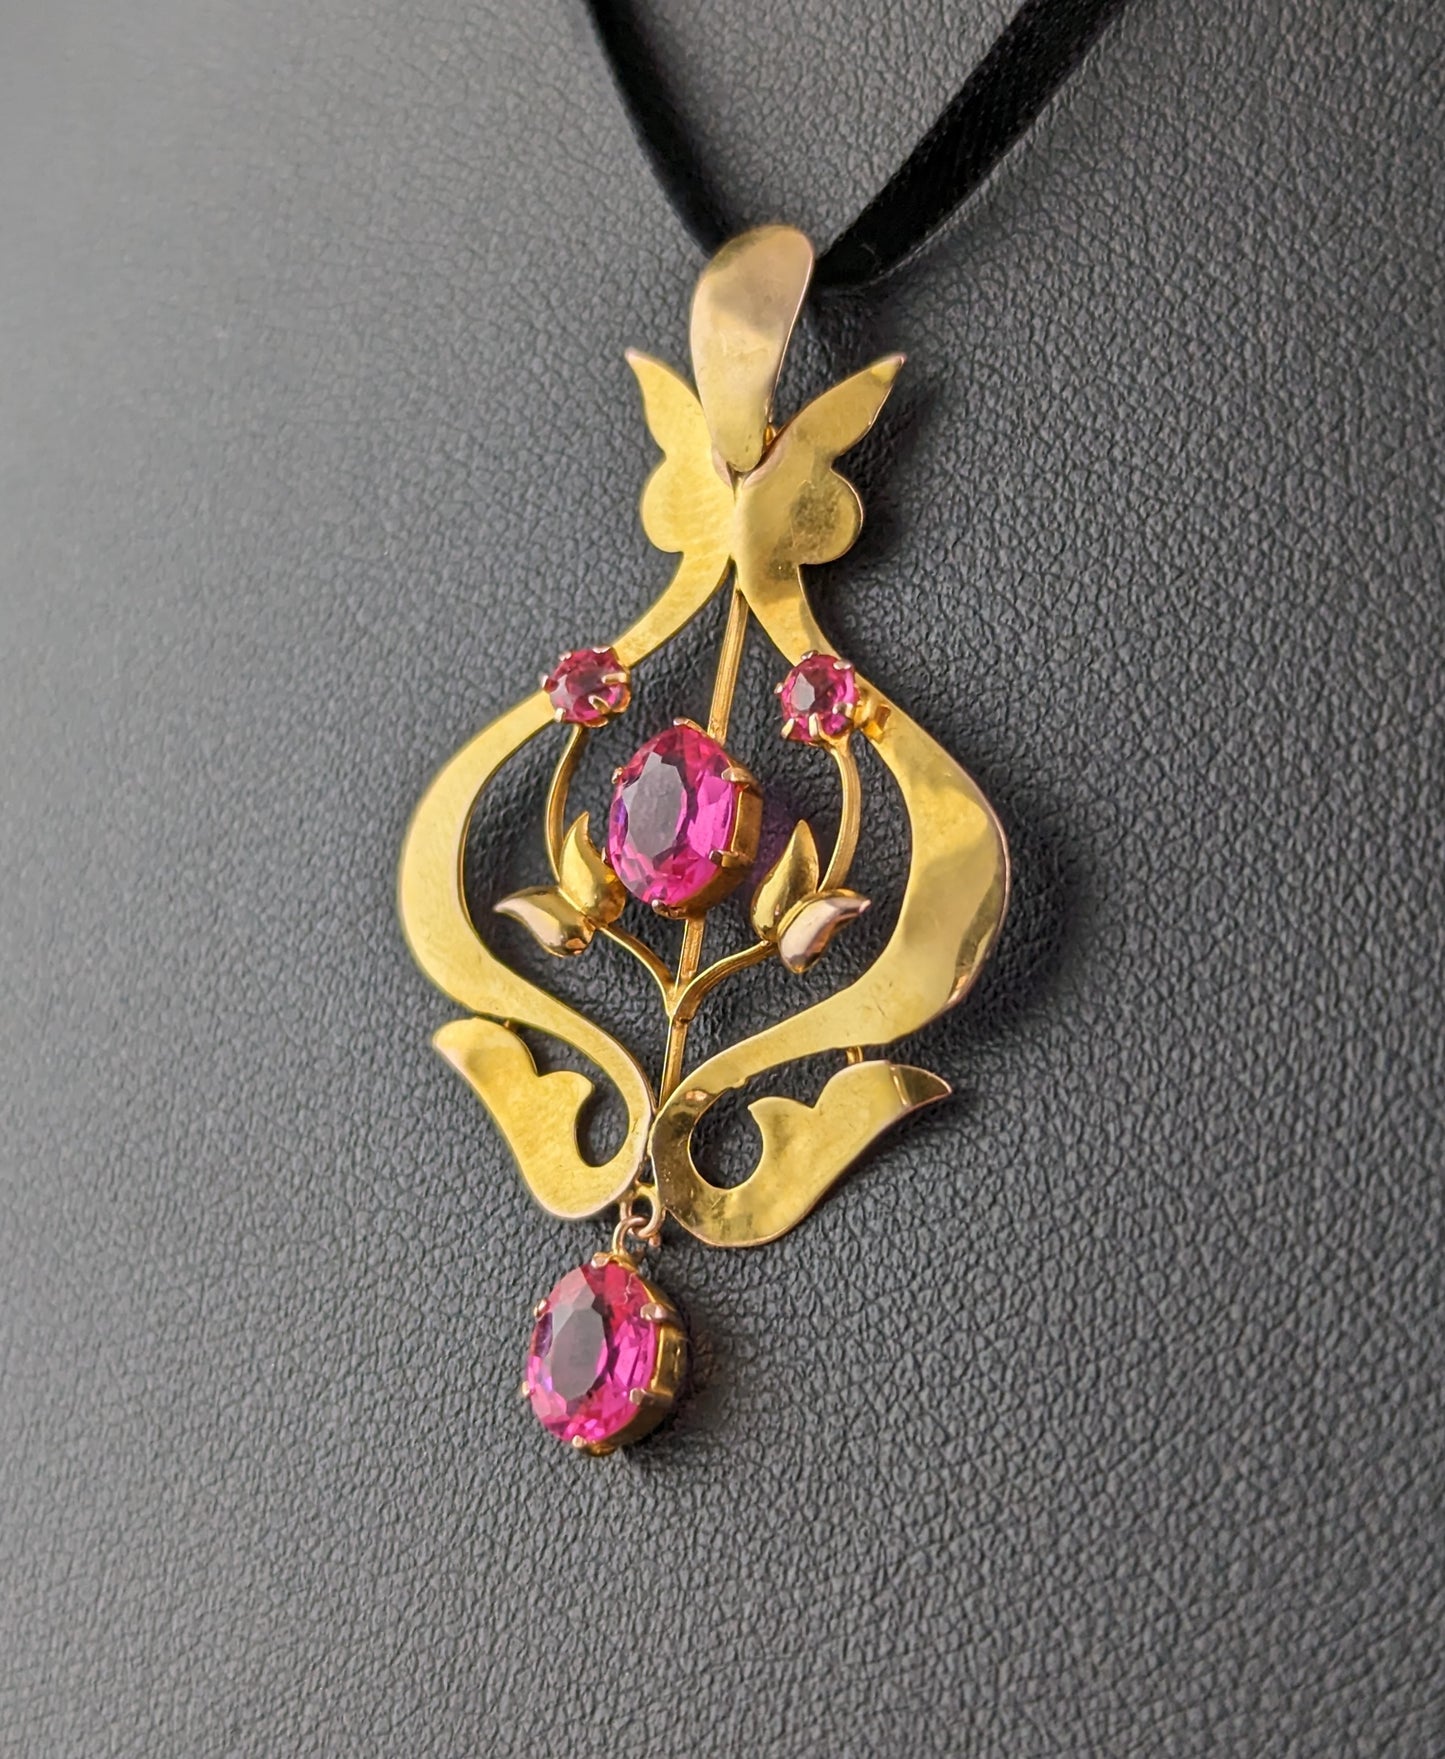 Antique 9ct gold and Pink paste pendant, Art Nouveau